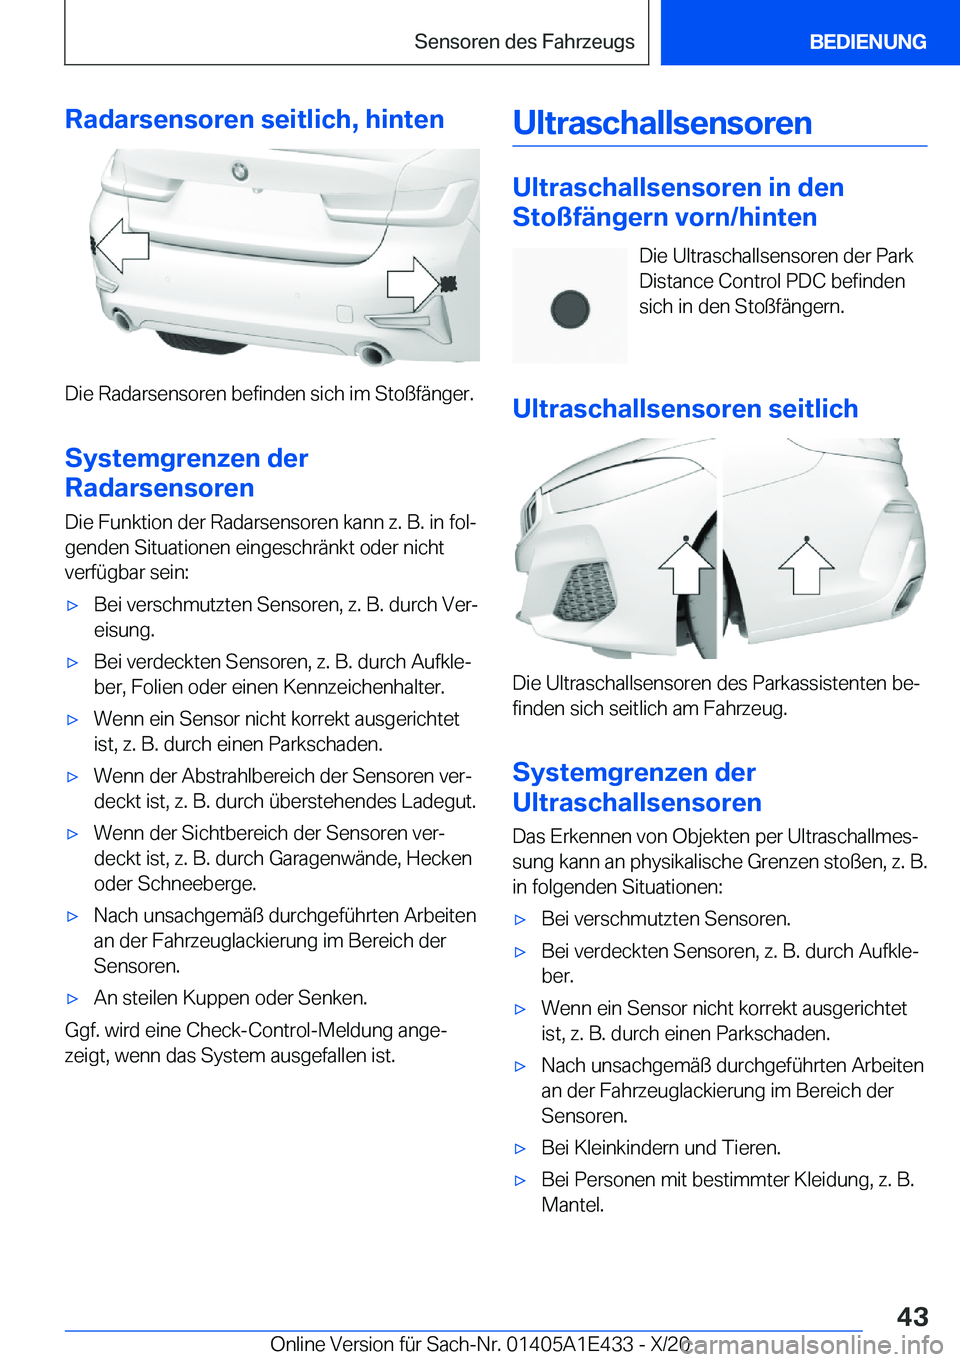 BMW M3 2021  Betriebsanleitungen (in German) �R�a�d�a�r�s�e�n�s�o�r�e�n��s�e�i�t�l�i�c�h�,��h�i�n�t�e�n
�D�i�e��R�a�d�a�r�s�e�n�s�o�r�e�n��b�e�f�i�n�d�e�n��s�i�c�h��i�m��S�t�o�